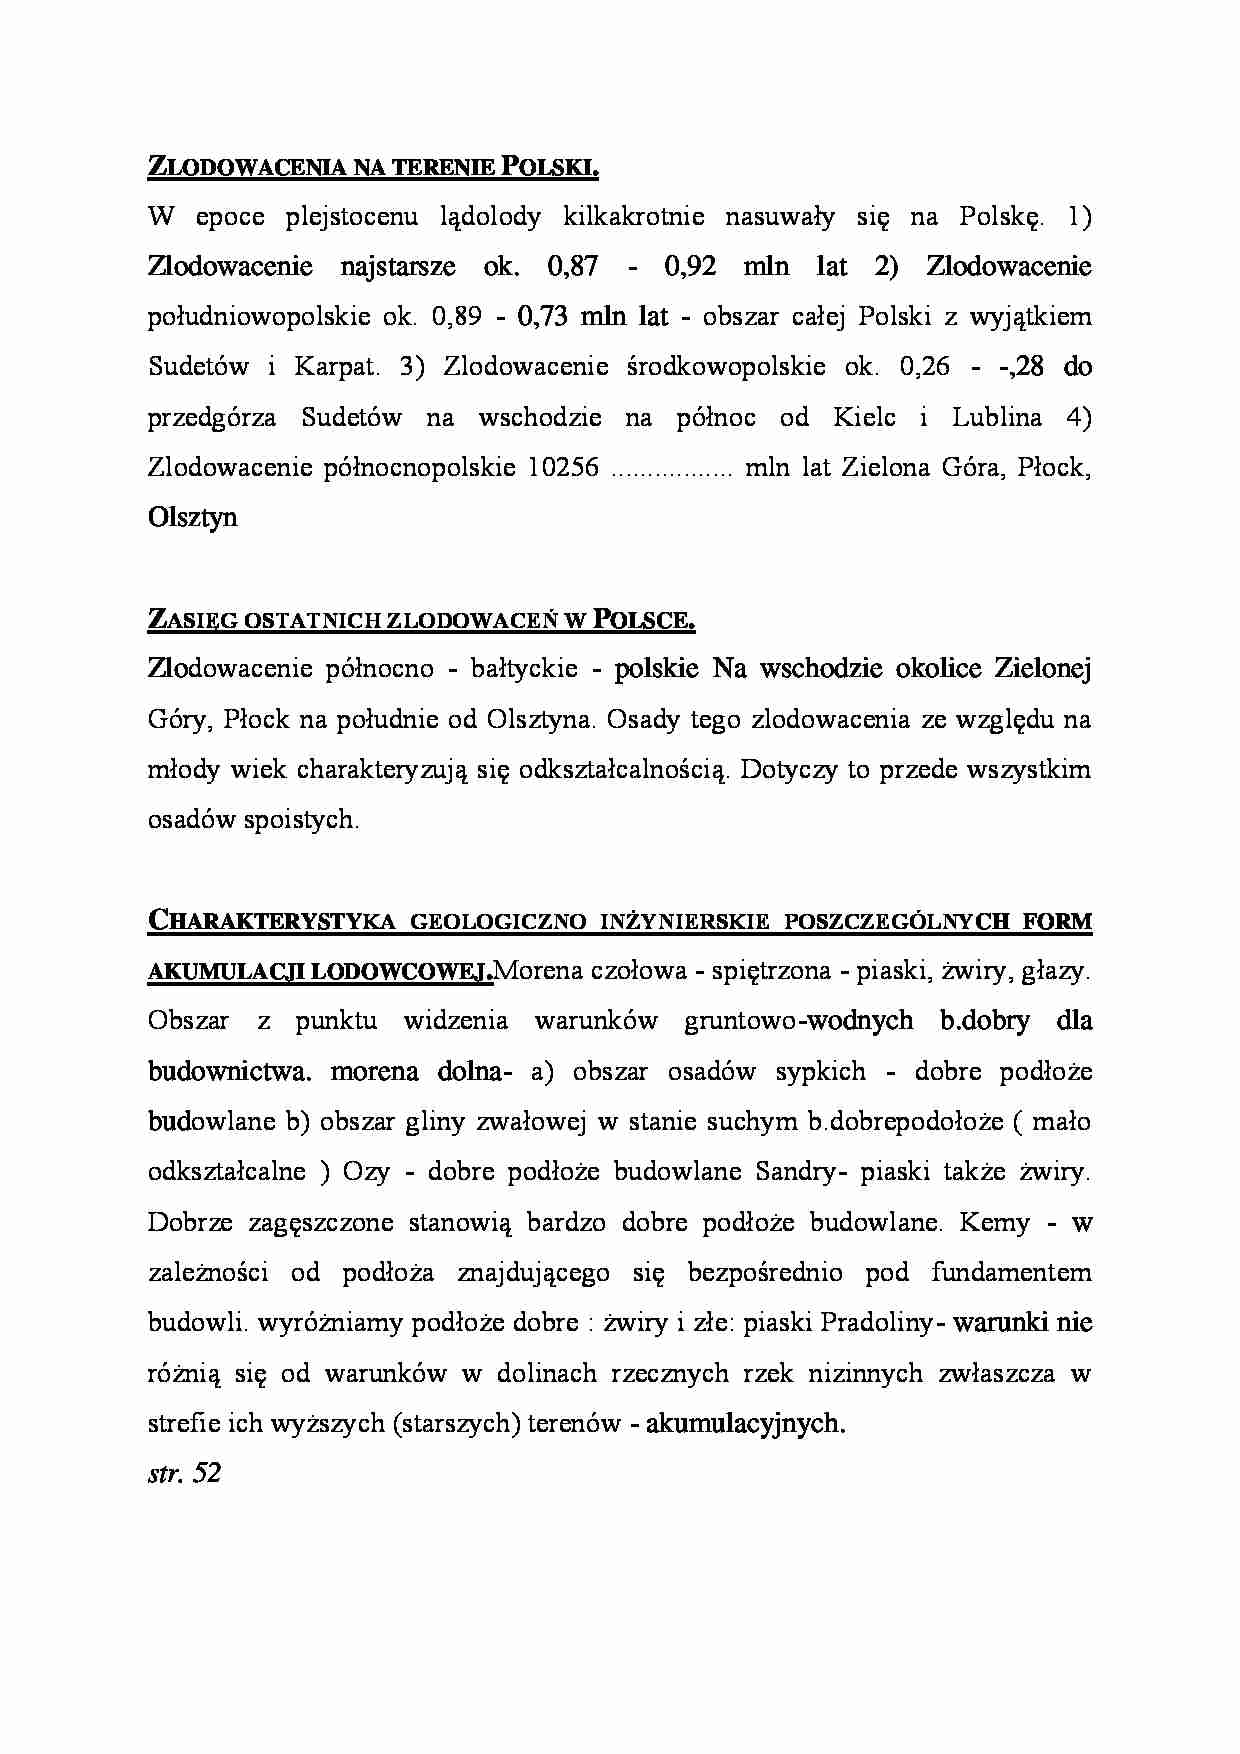 Zlodowacenia na terenie Polski - omówienie  - strona 1